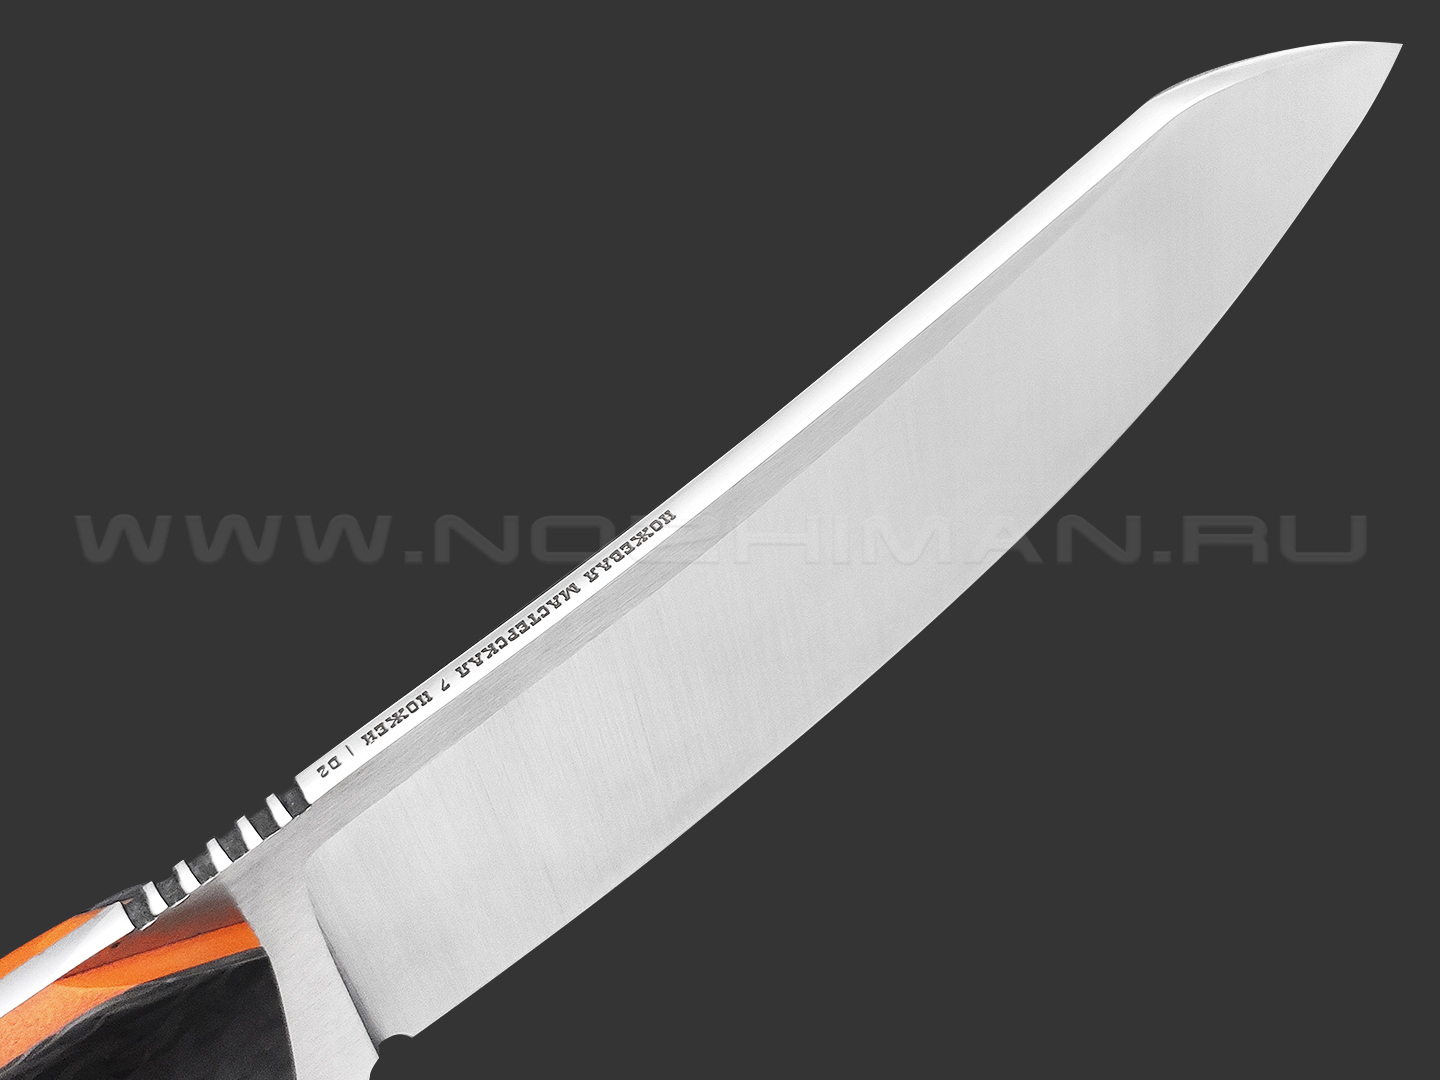 7 ножей нож Сунгай сталь D2 satin, рукоять Carbon fiber, G10 orange